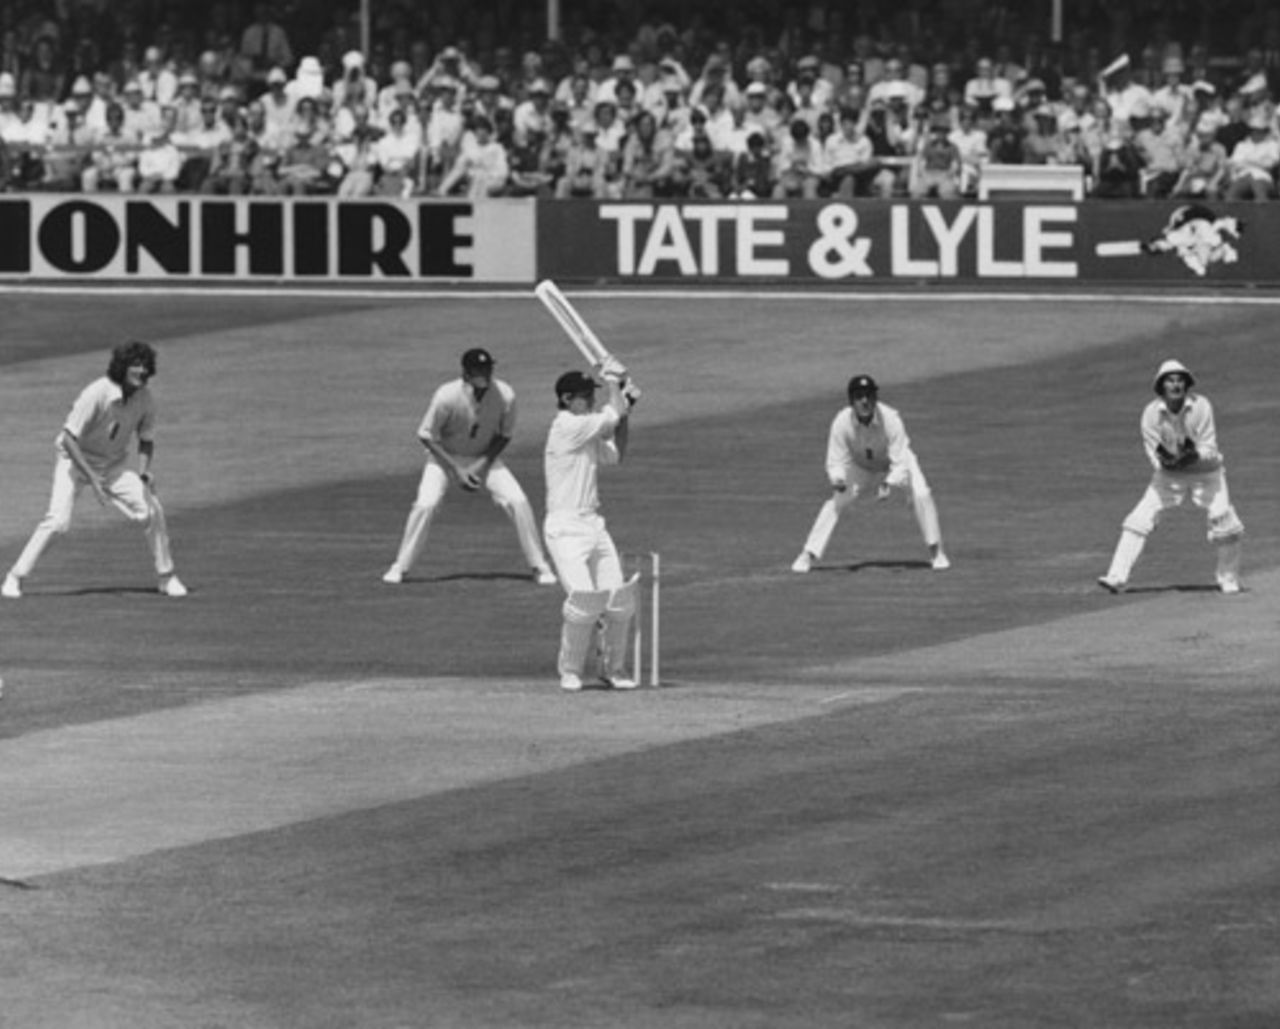 Australian cricketer Ian Davis in action, August 1, 1977